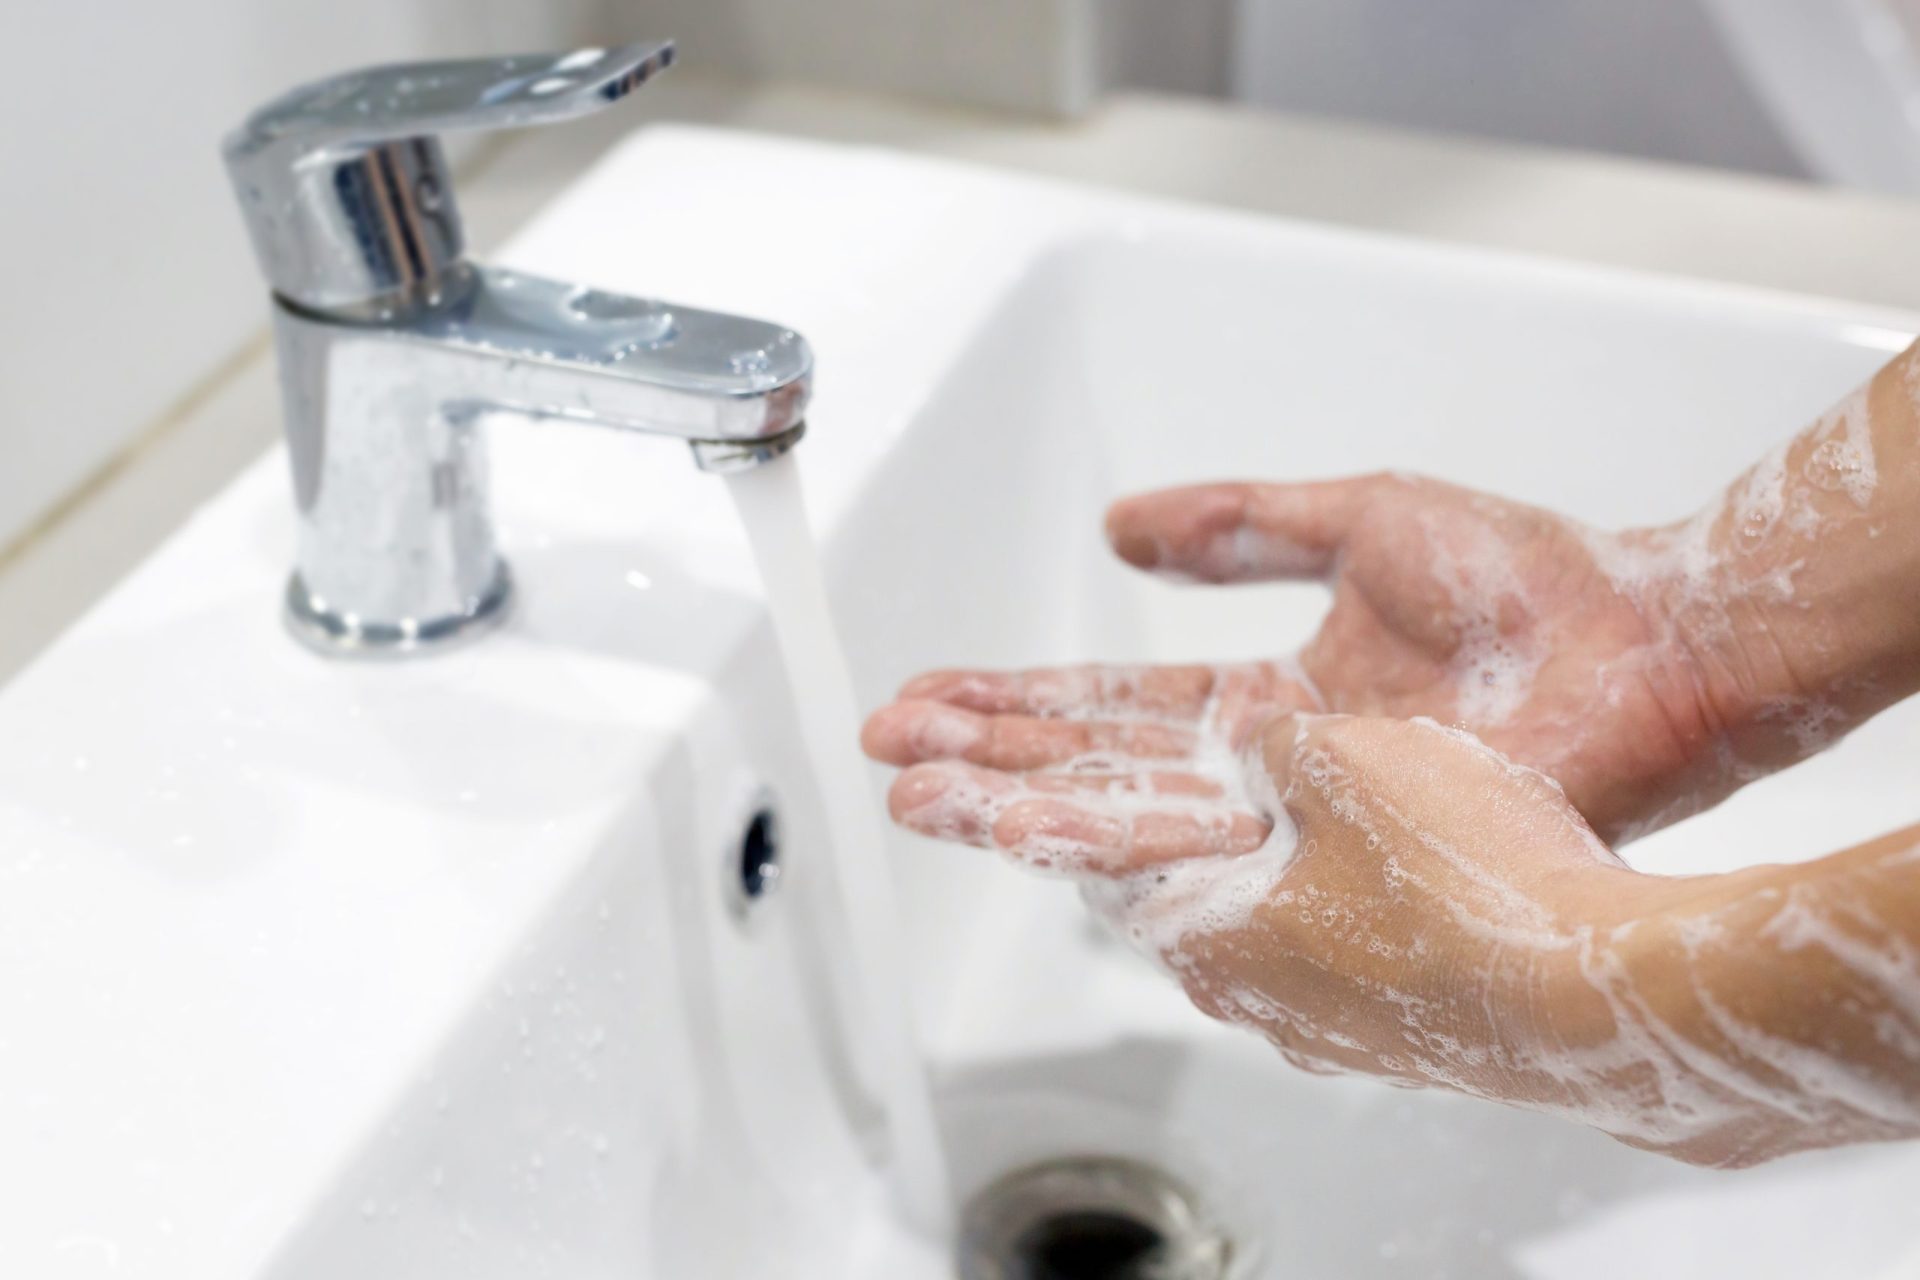 Quer ensinar os seus filhos a lavar bem as mãos? Siga os truques desta professora | FOTO